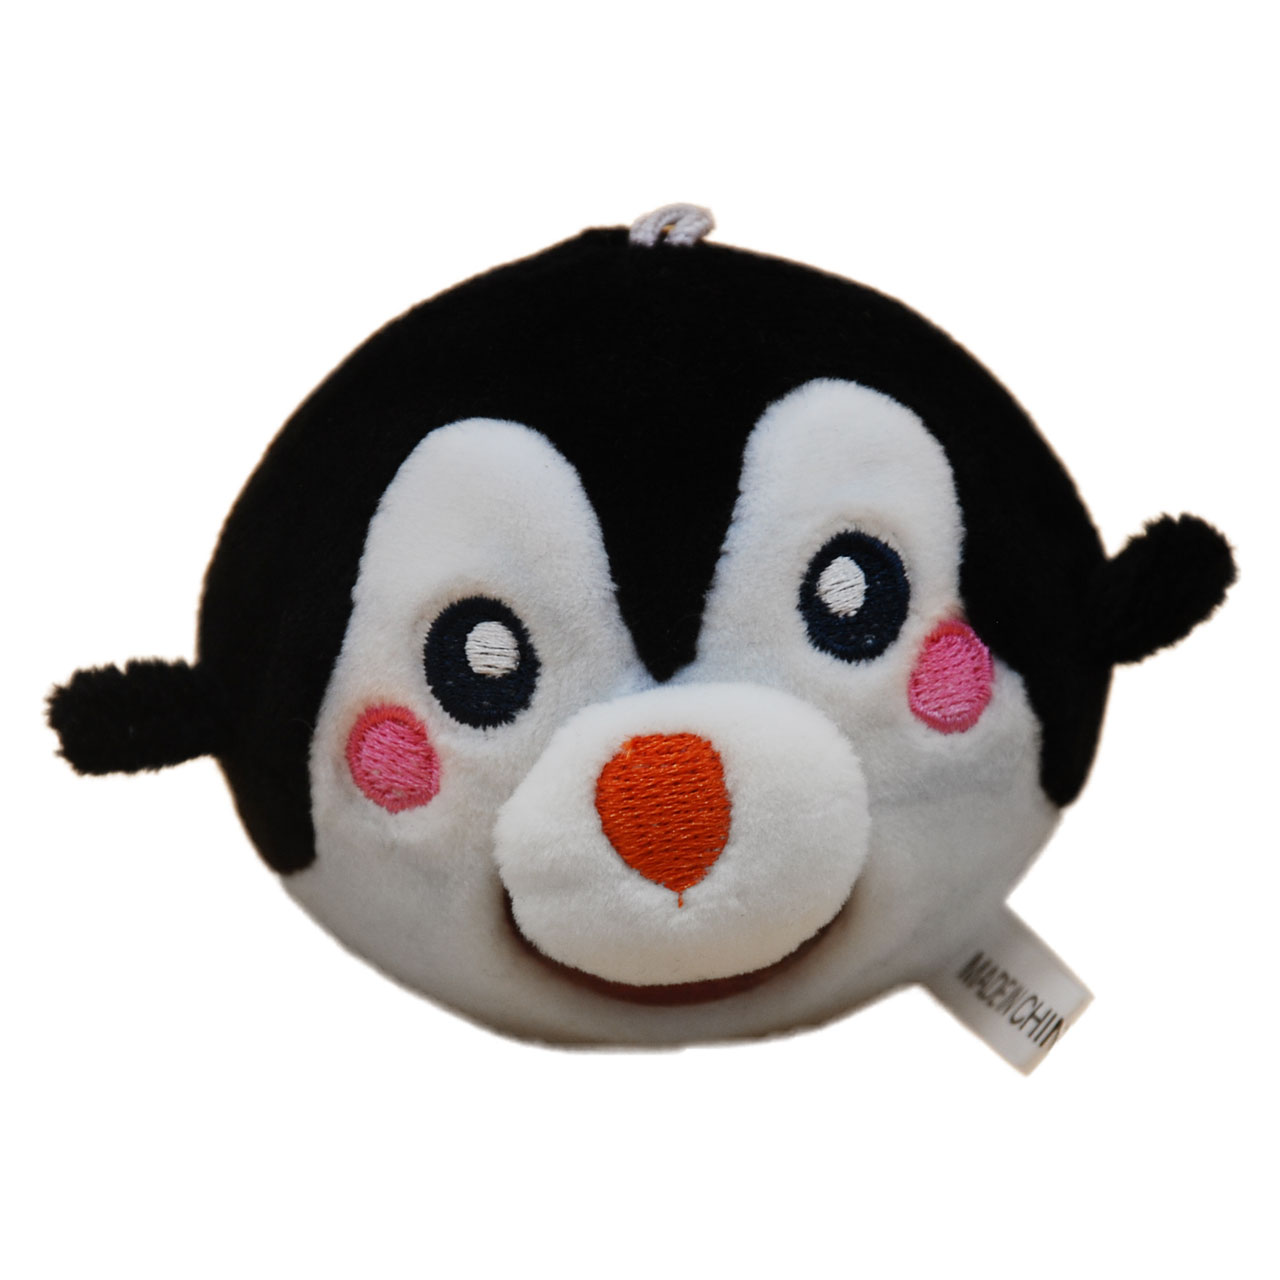 فیجت ضد استرس طرح پنگوئن کد B10167